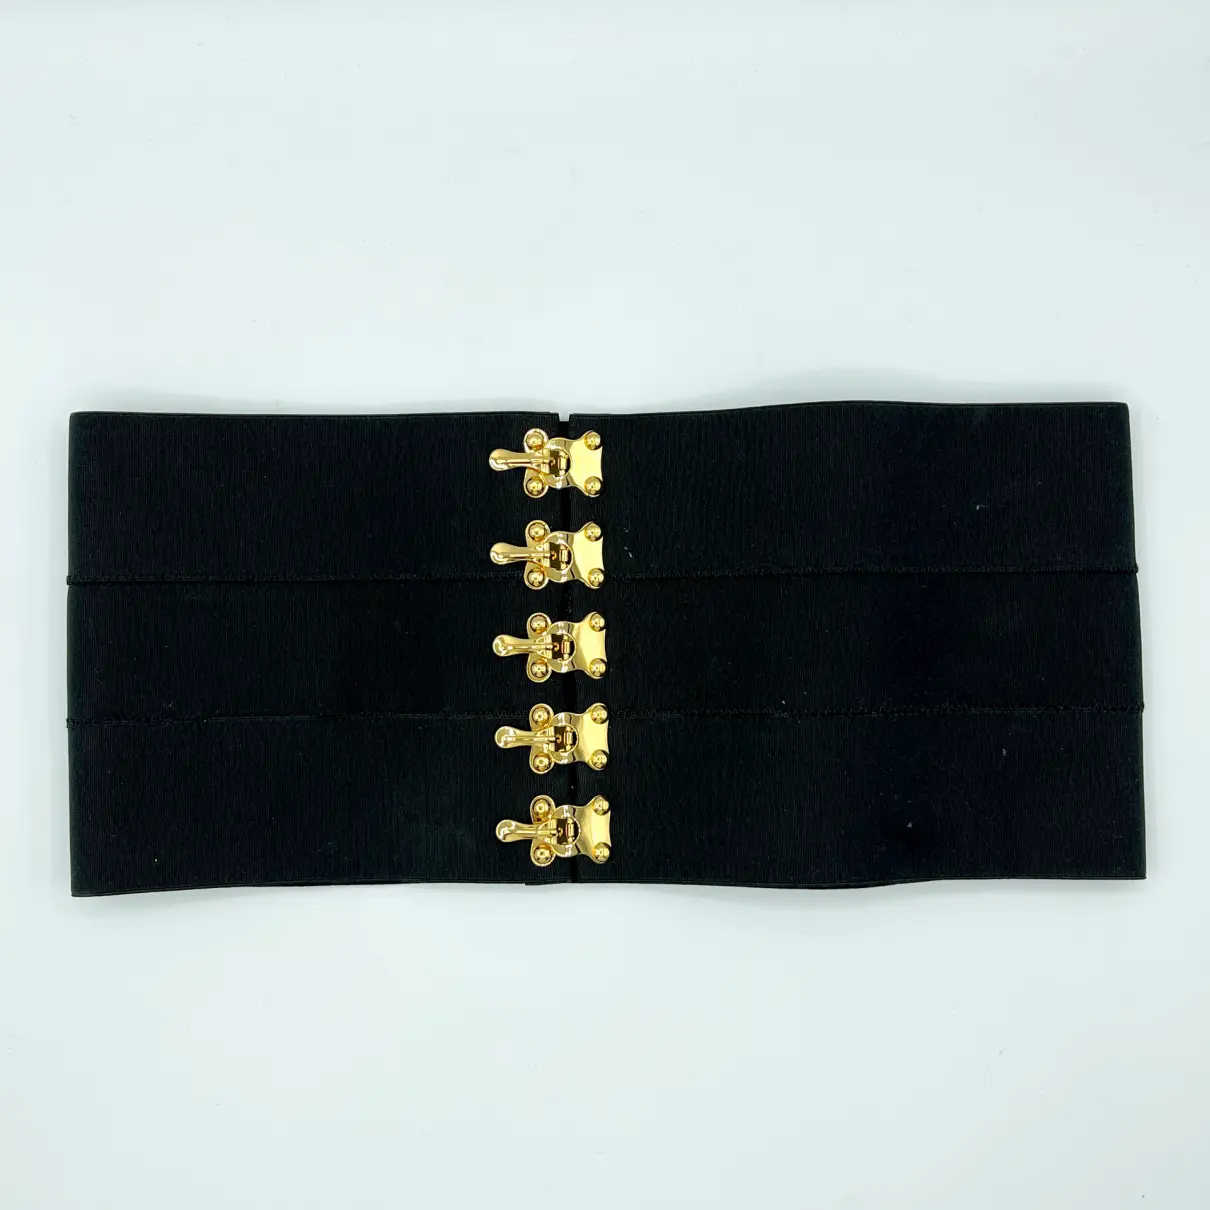 Buy Prada Belt online - Vintage